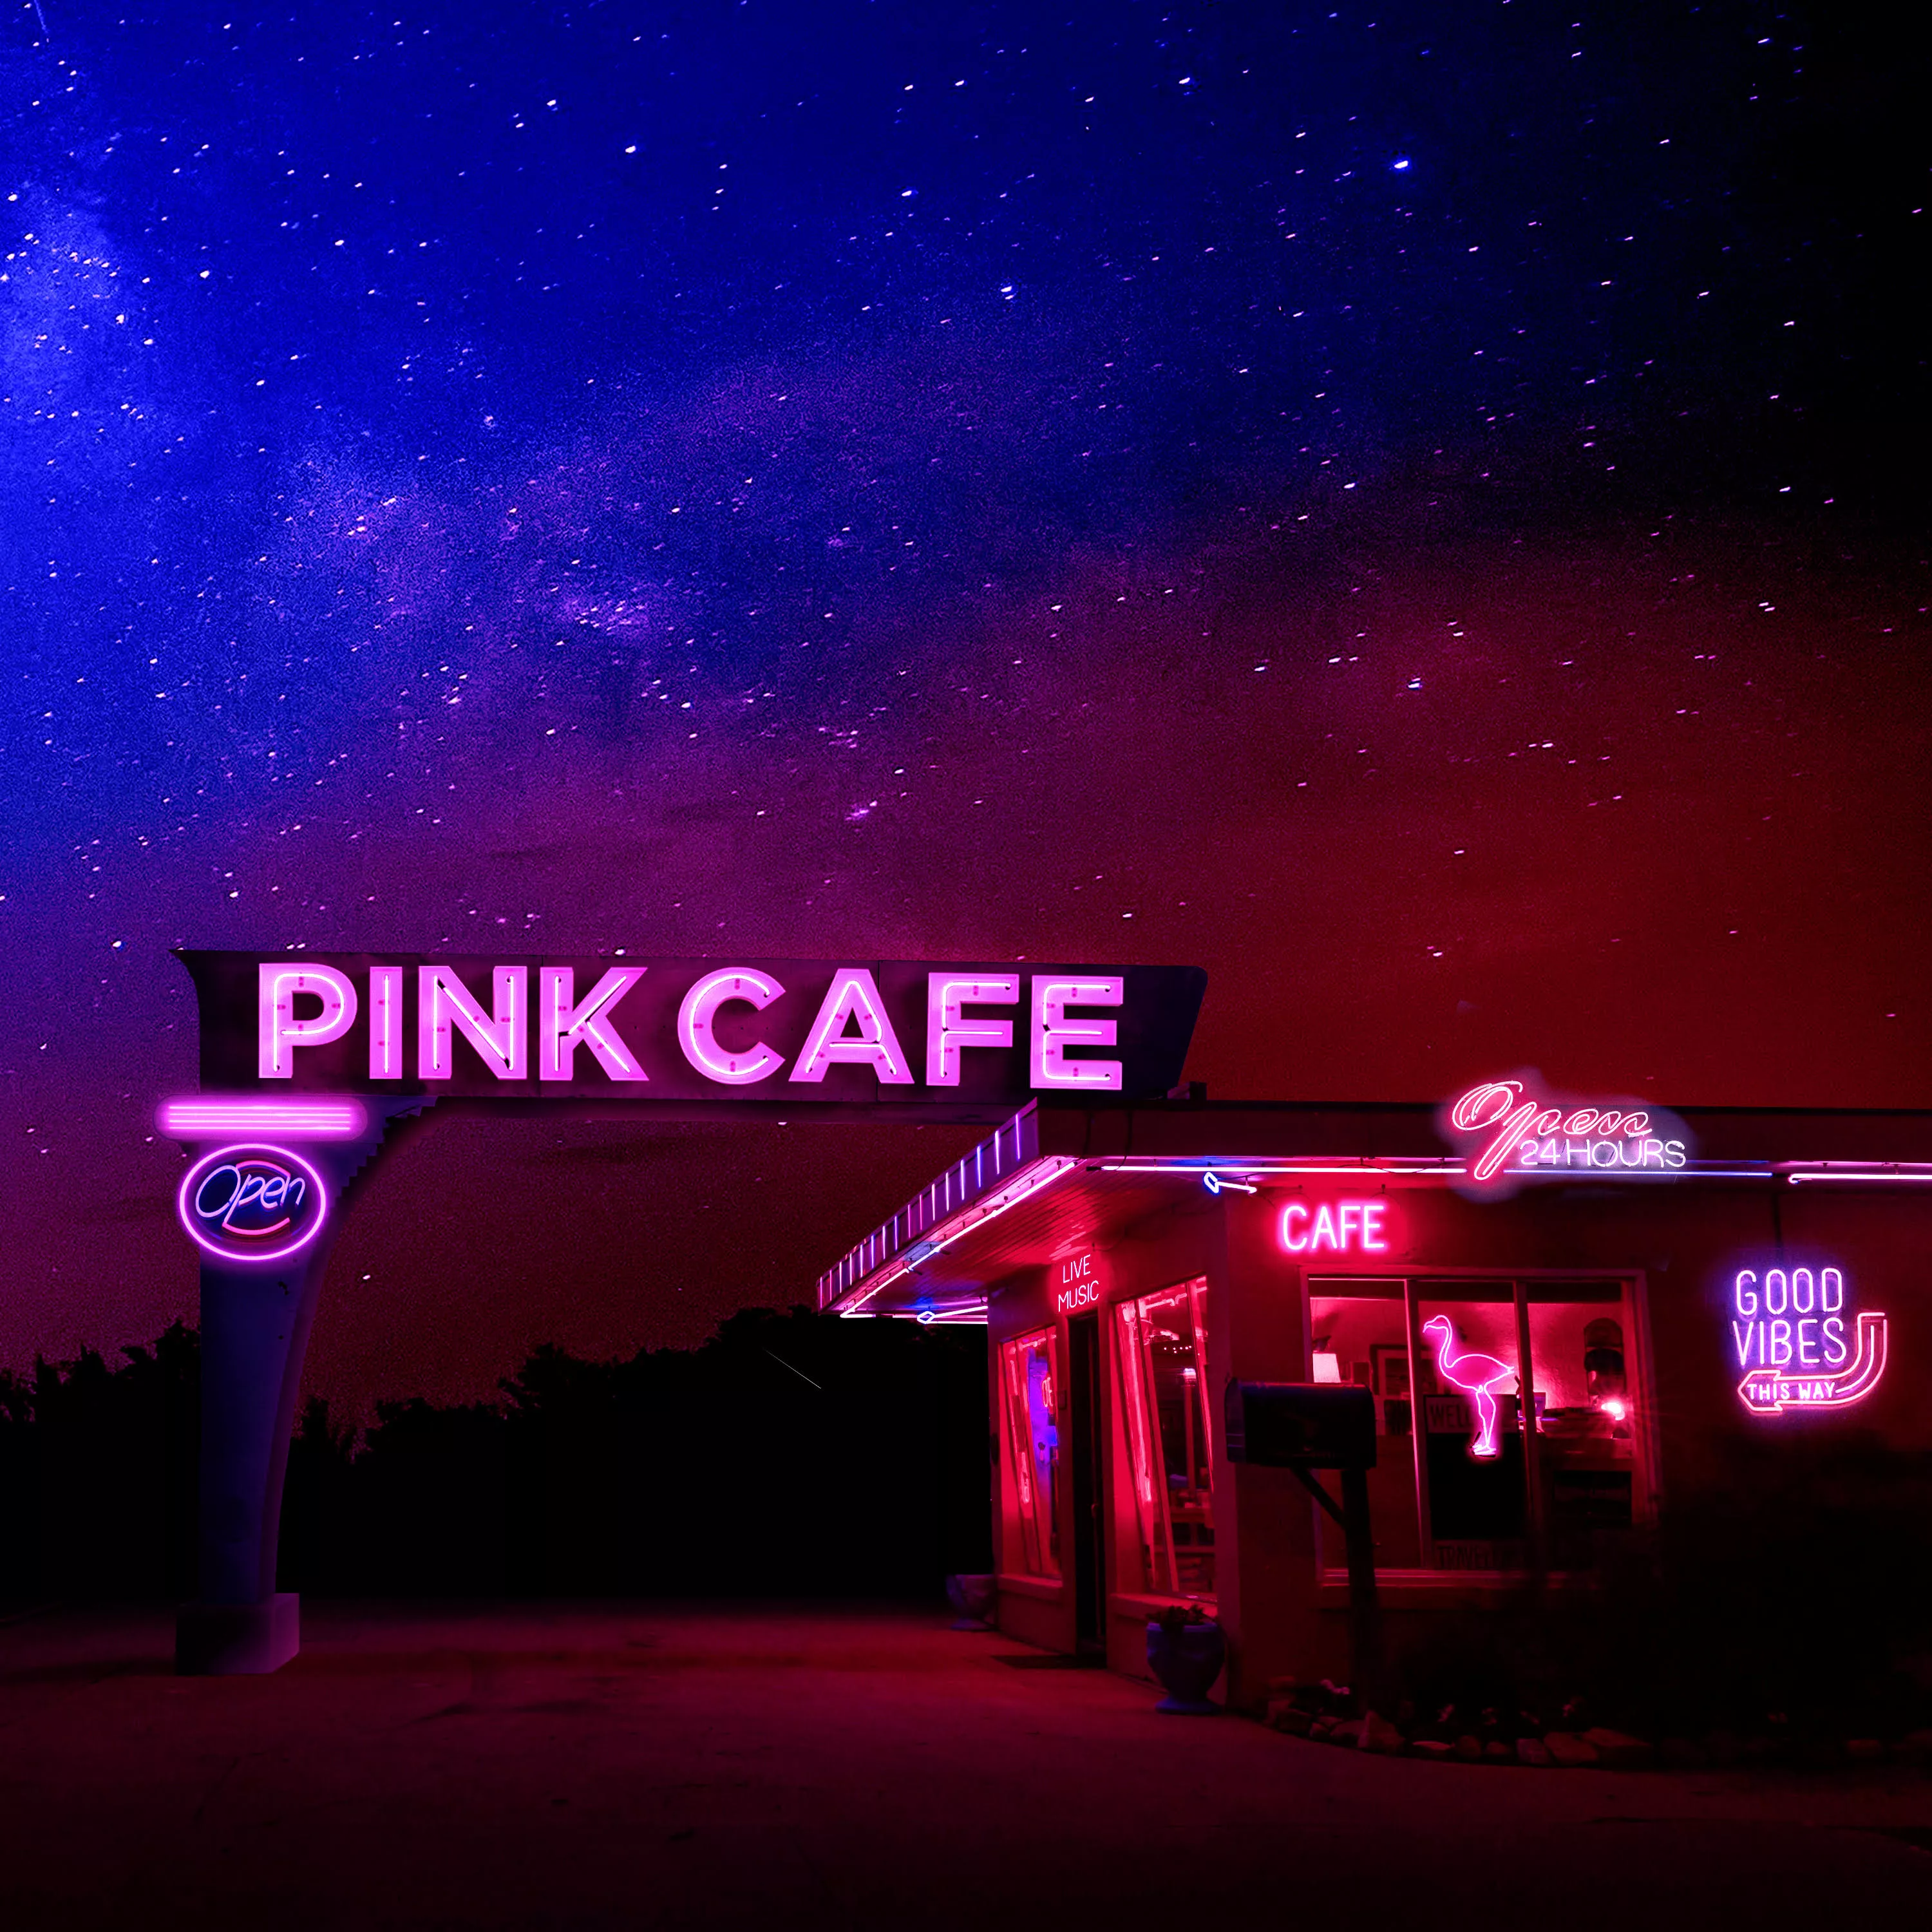 Pink Cafe - Brandon Beal & Pink Cafe 